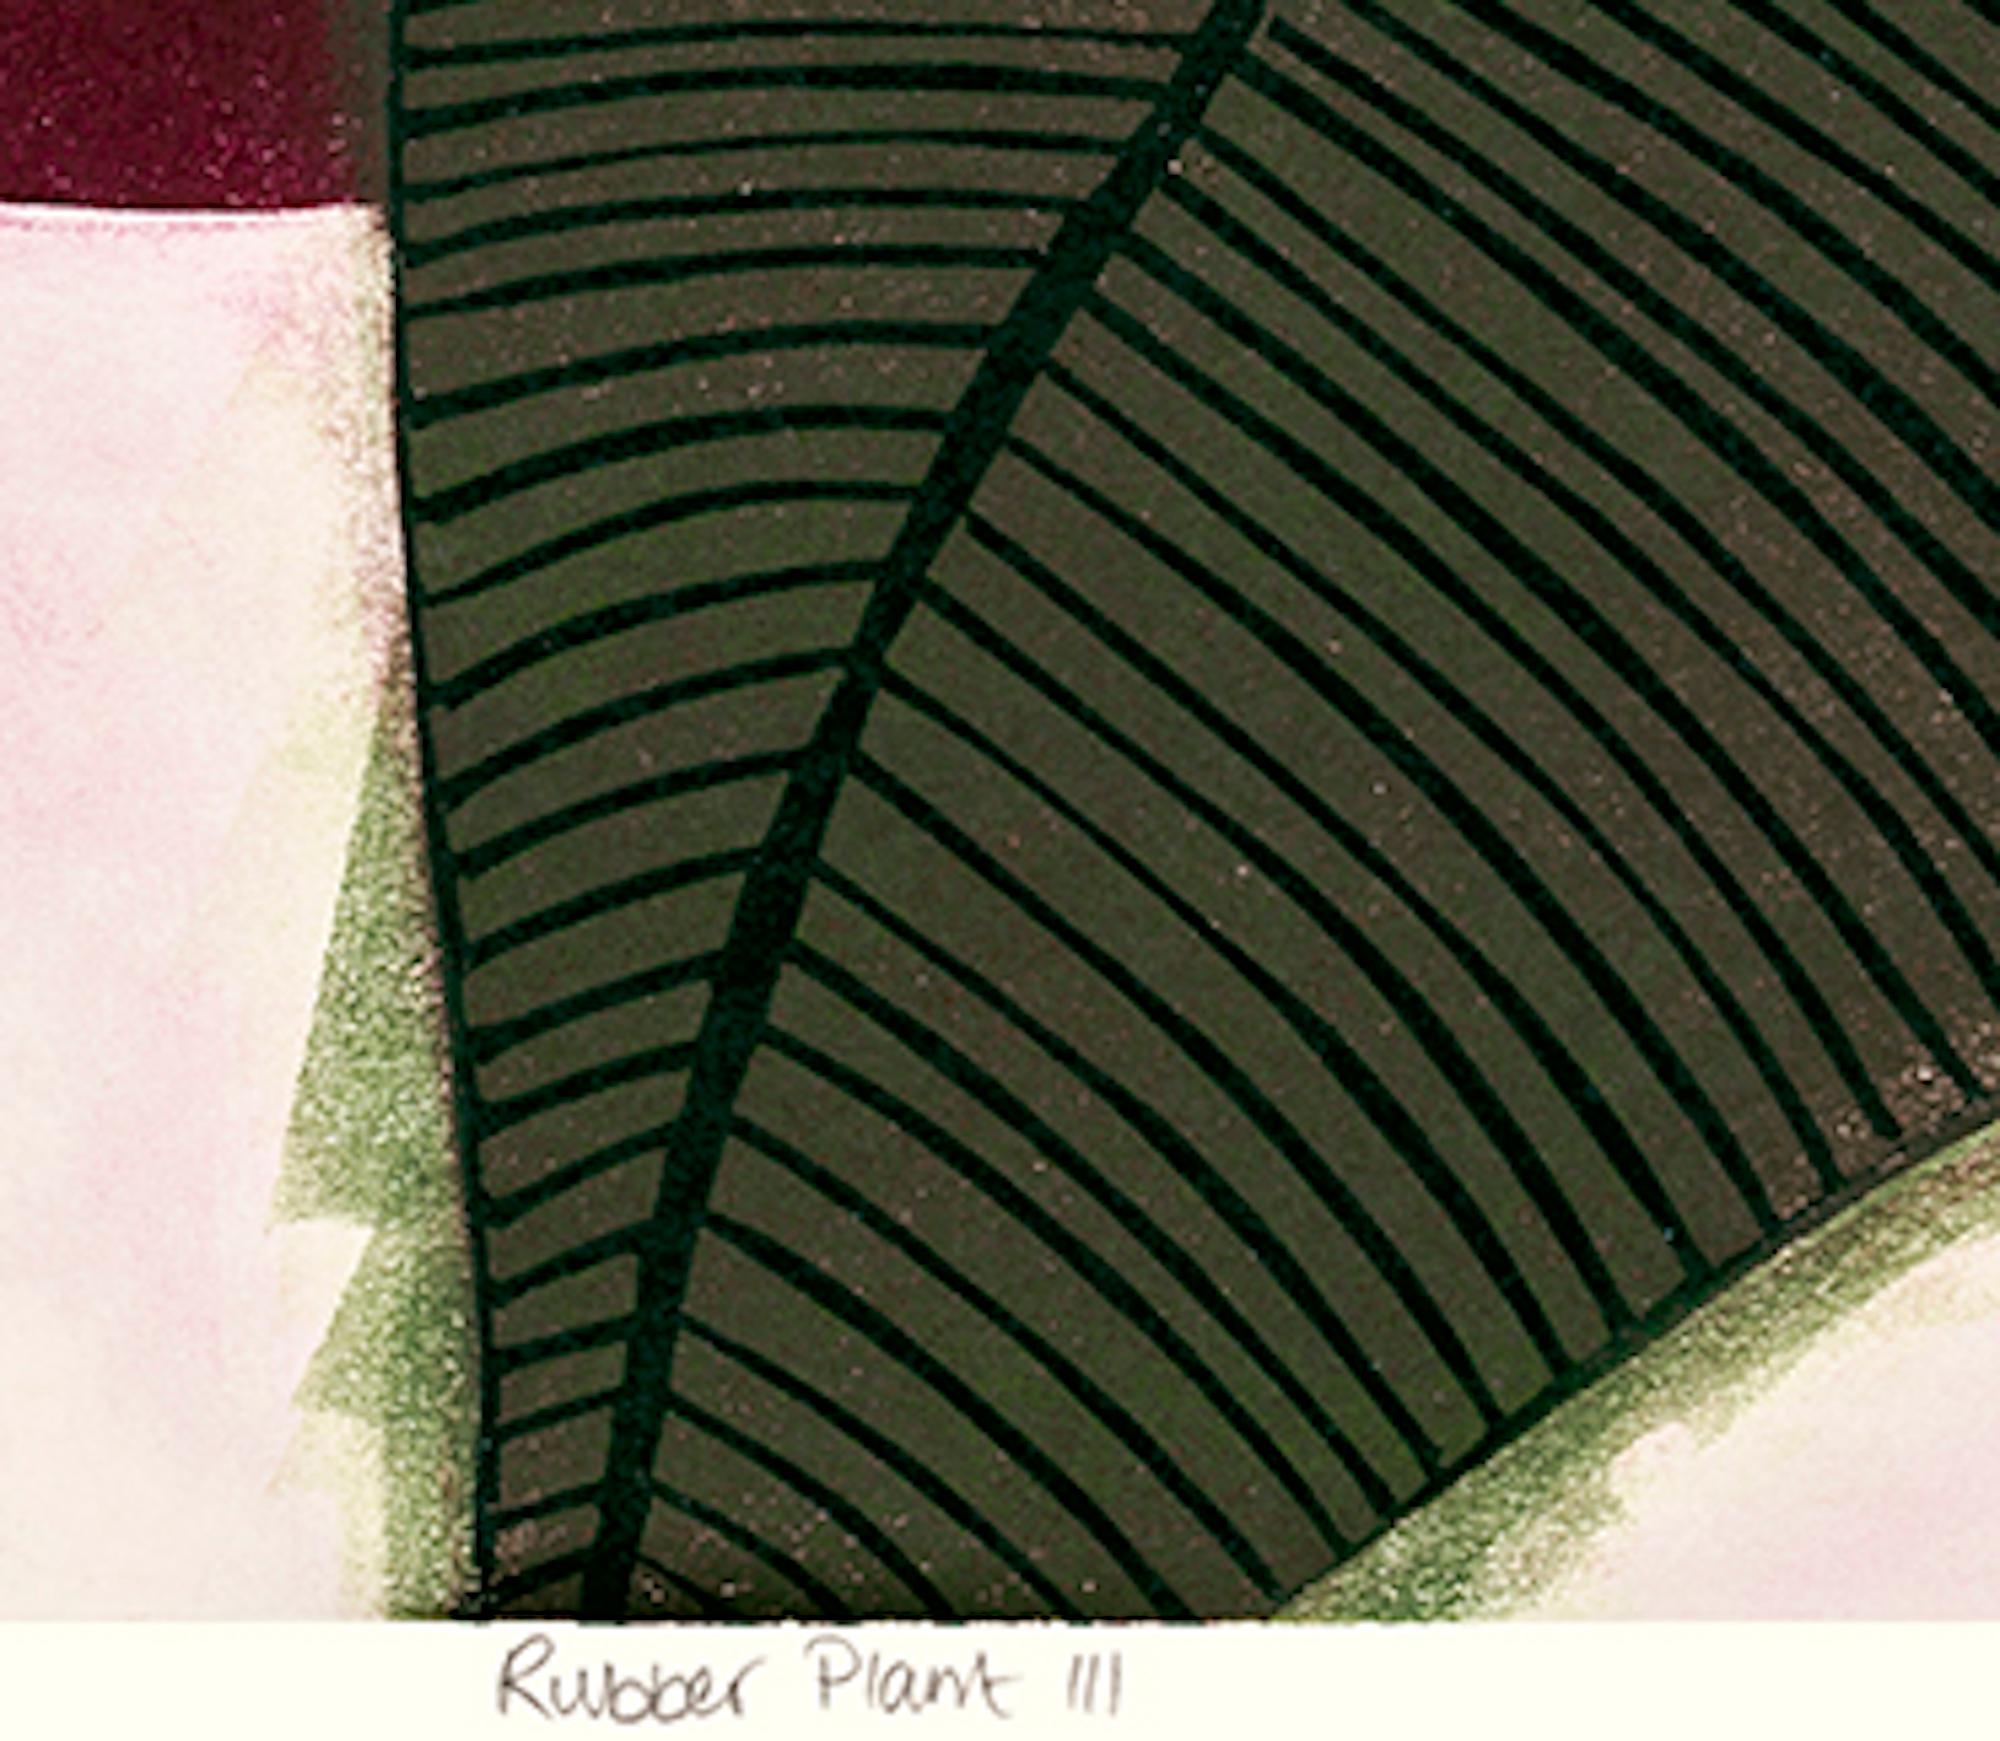 Gummi-Pflanzgefäßdruck III, Hauspflanzgefäßdruck, erschwingliche Kunst, limitierte Auflage (Pop-Art), Print, von Kerry Day